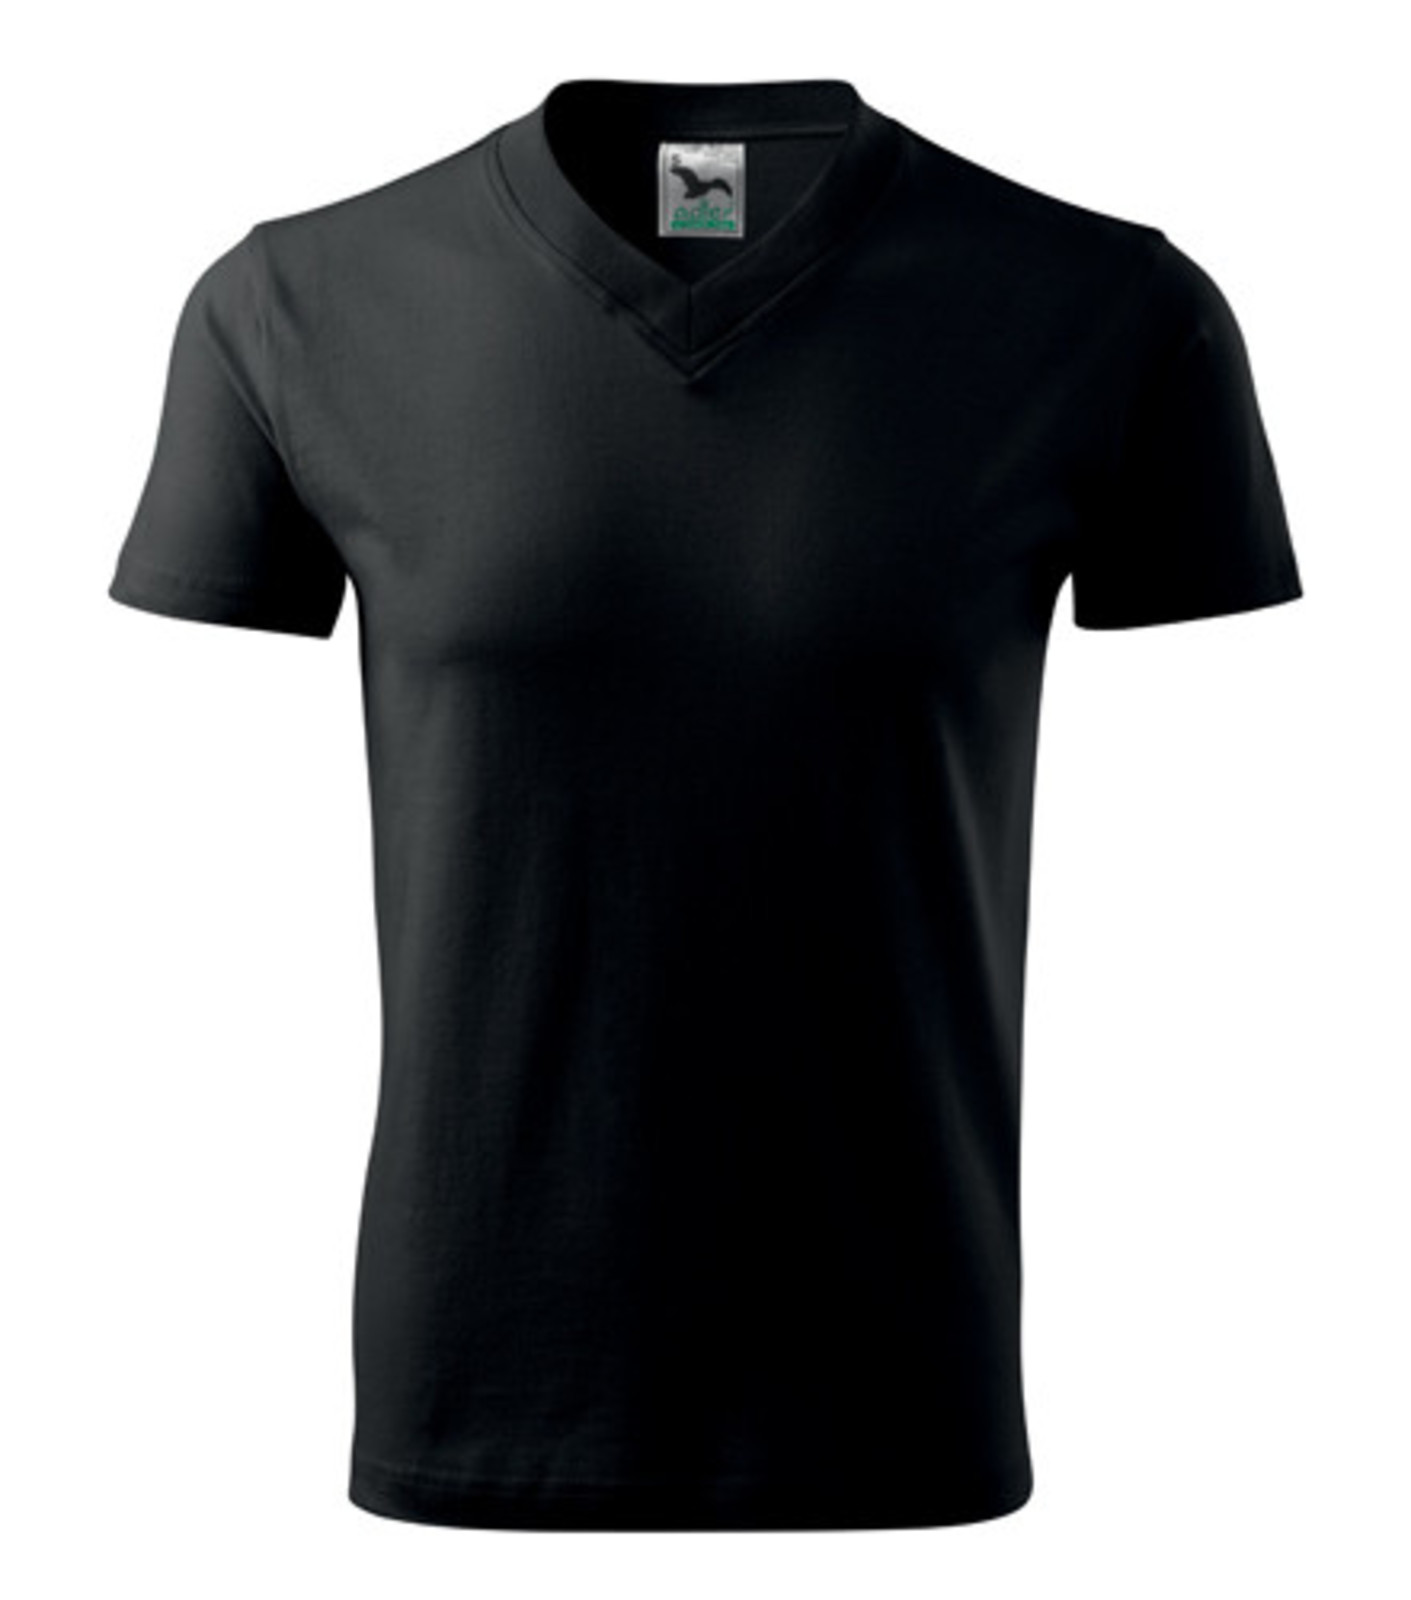 Unisex tričko s výstrihom Adler V-Neck 102 - veľkosť: XL, farba: čierna